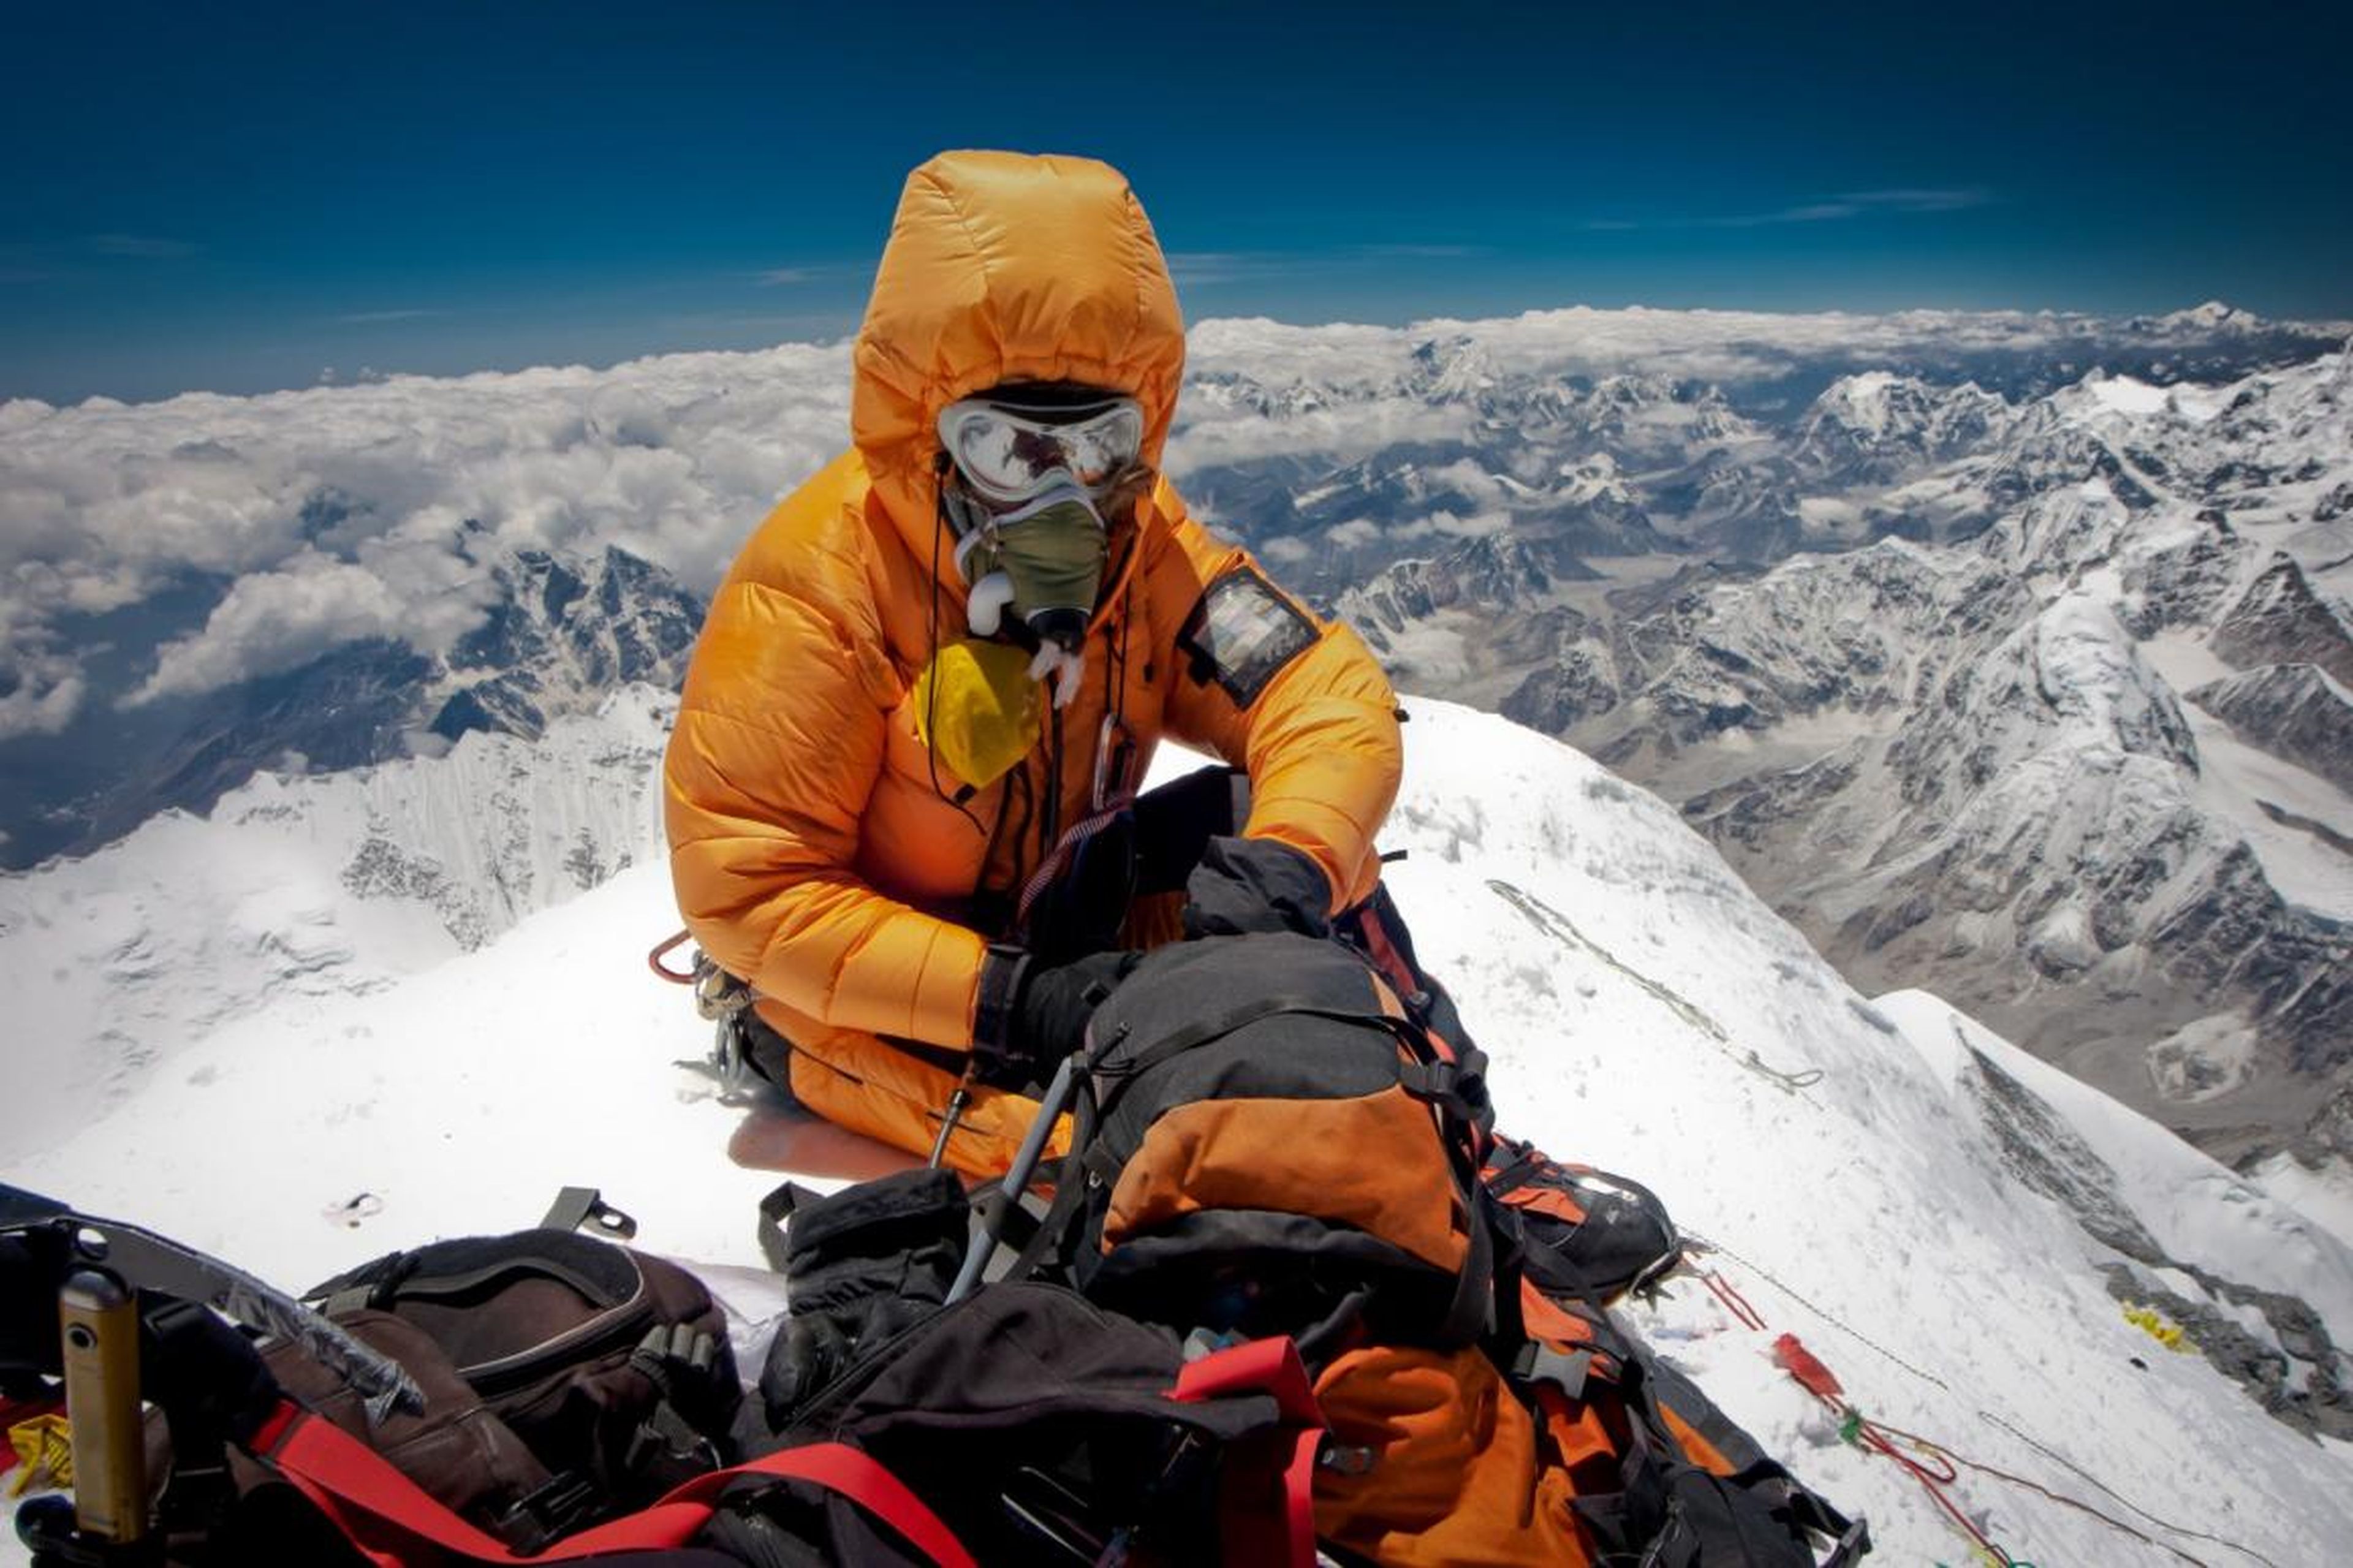 Un escalador descansando en la cima del Everest, la montaña más alta del mundo que está entre el Tibet y Nepal